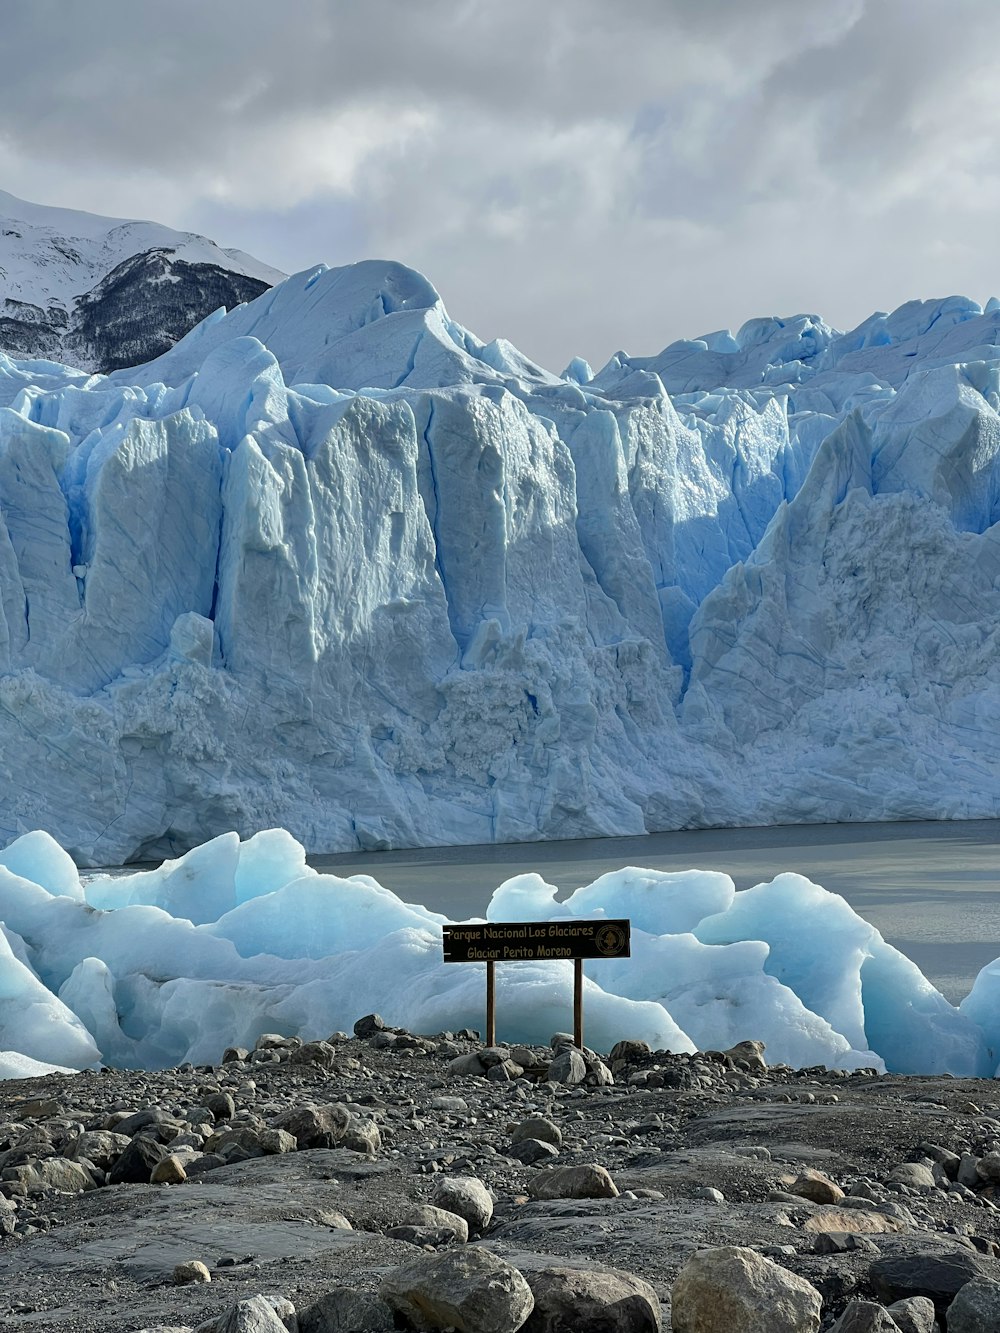 a sign in front of a glacier with Perito Moreno Glacier in the background